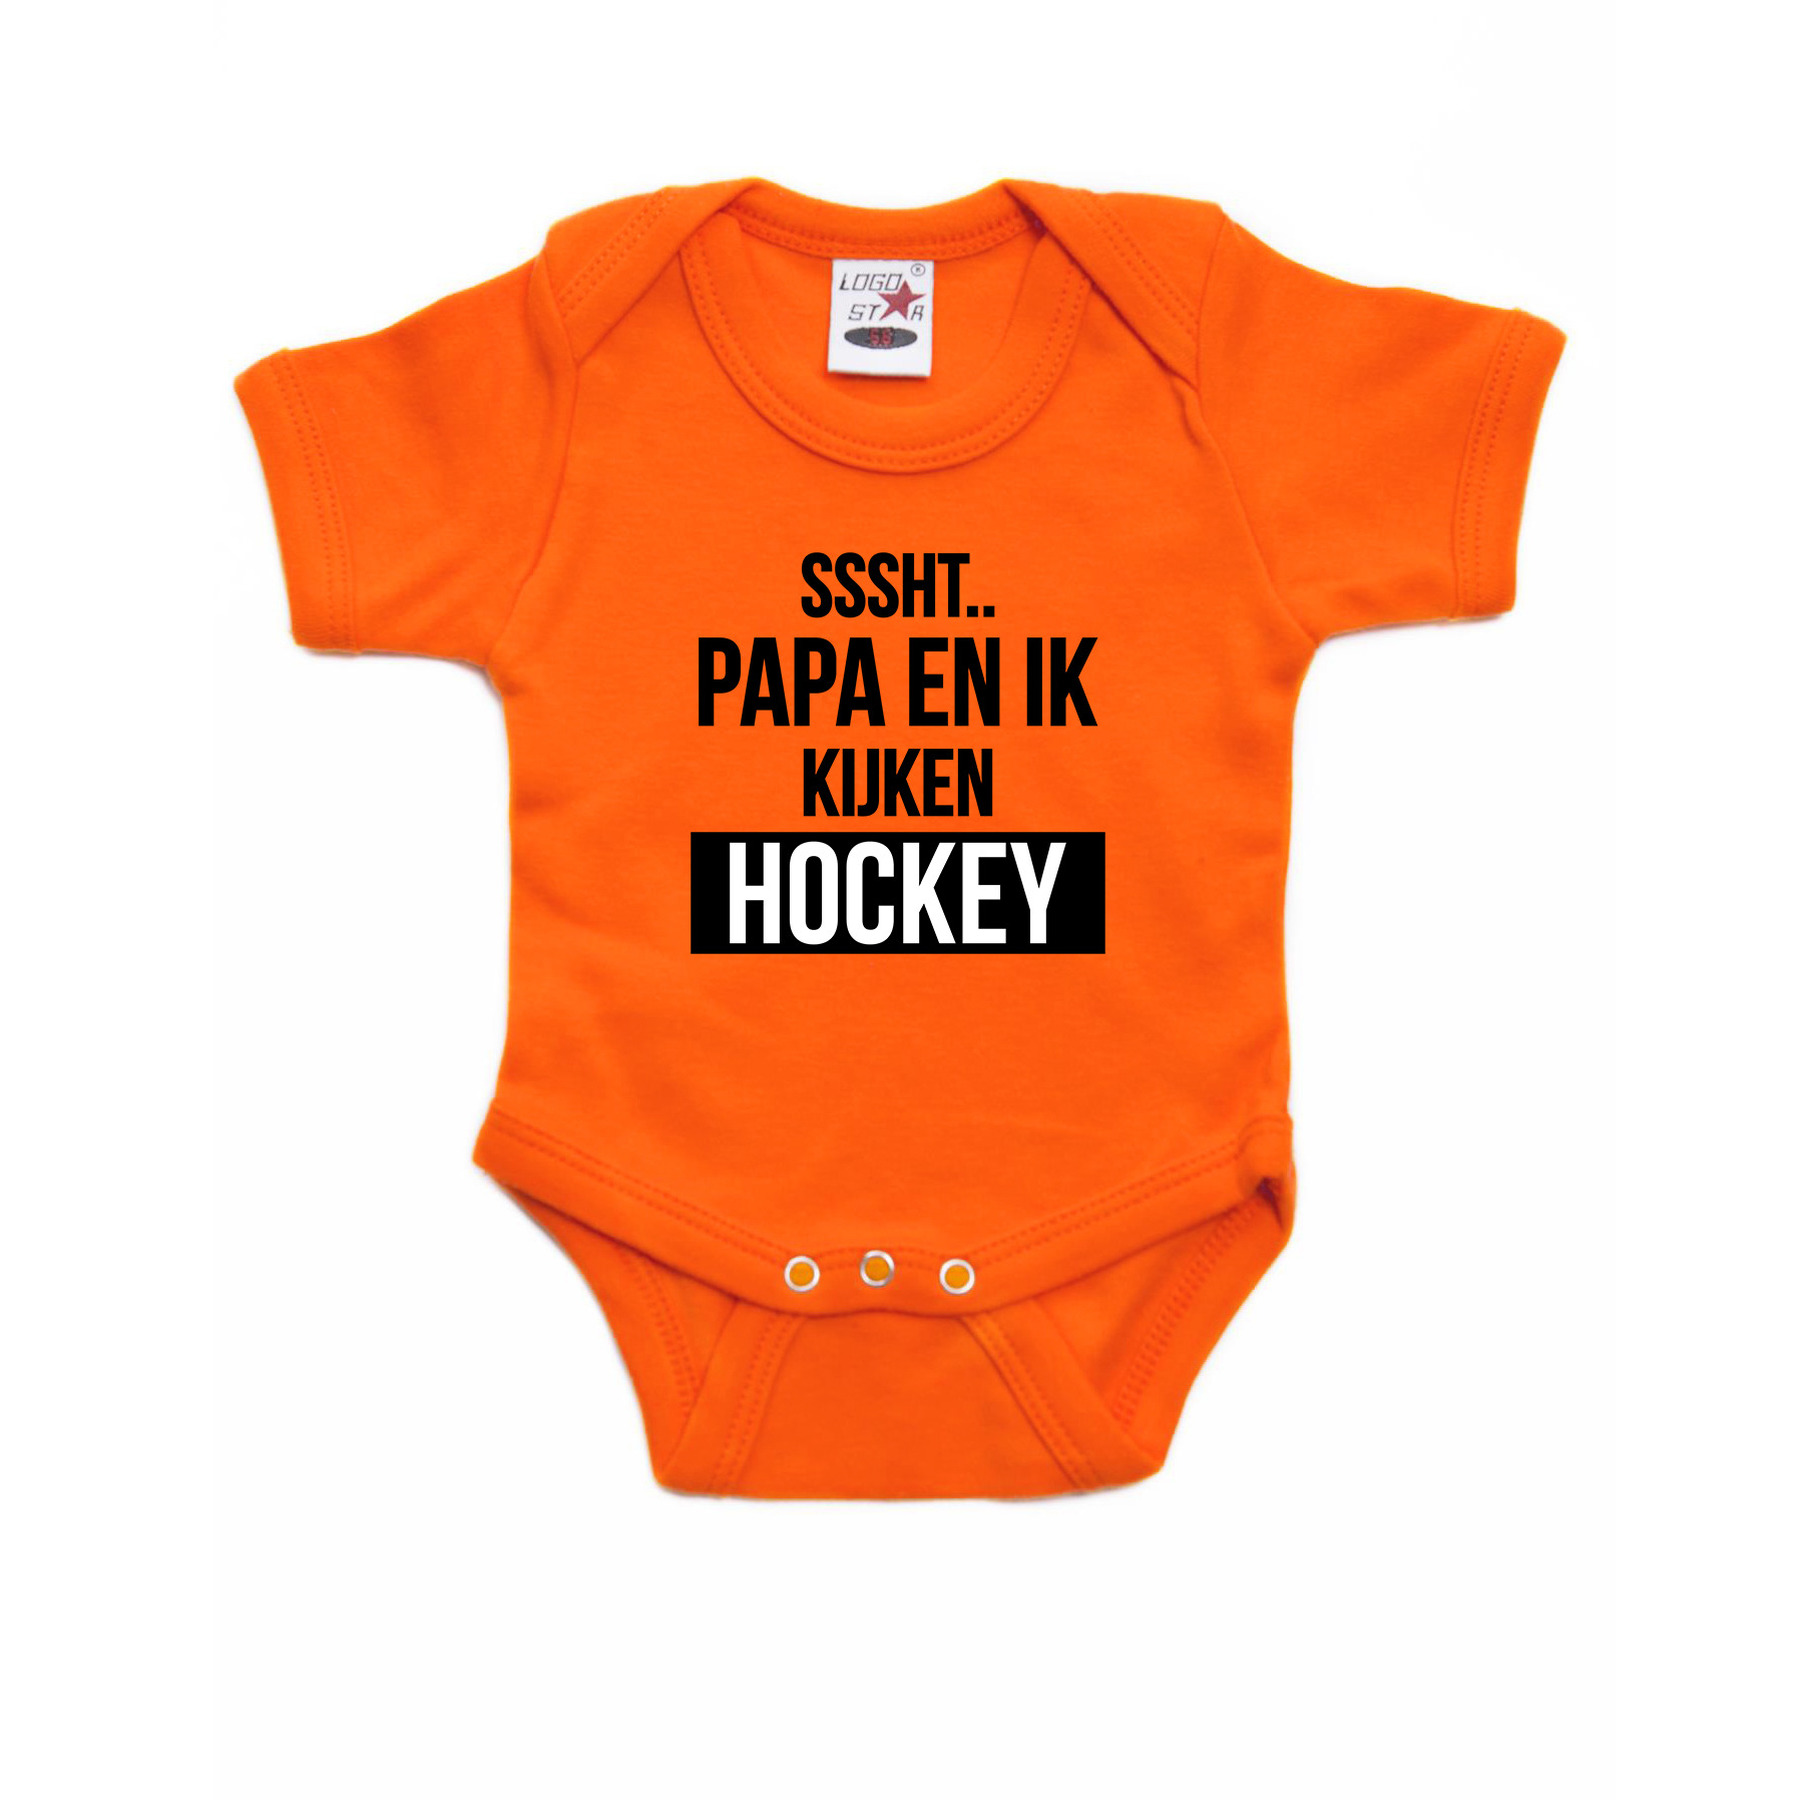 Sssht kijken hockey baby rompertje oranje Holland-Nederland-EK-WK supporter